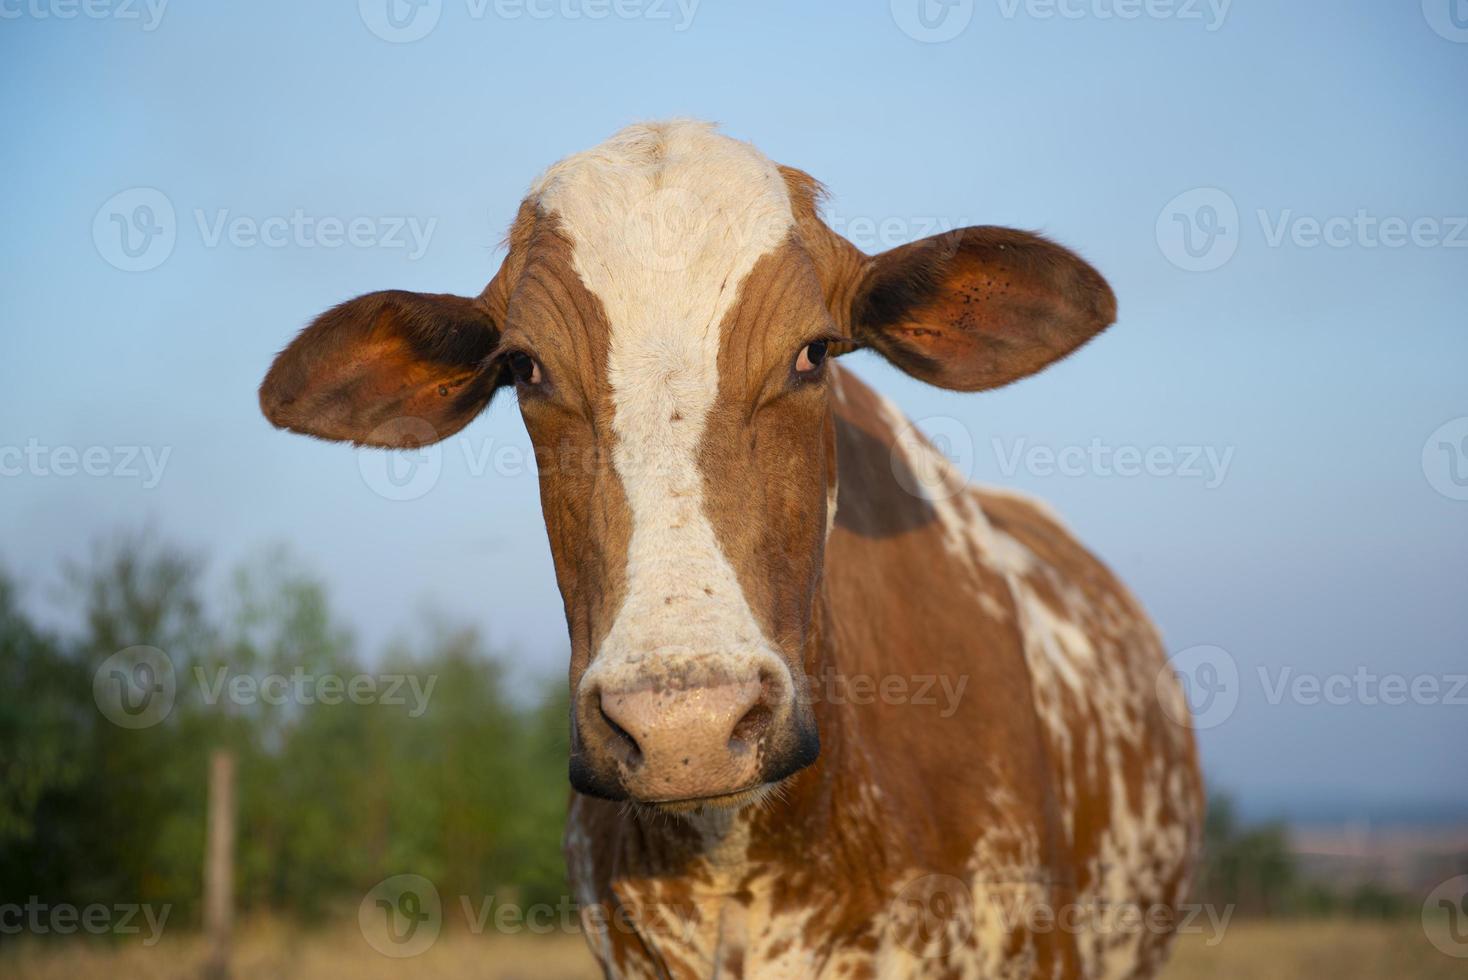 gros plan d'une belle vache hollandaise tachetée de brun et de blanc photo